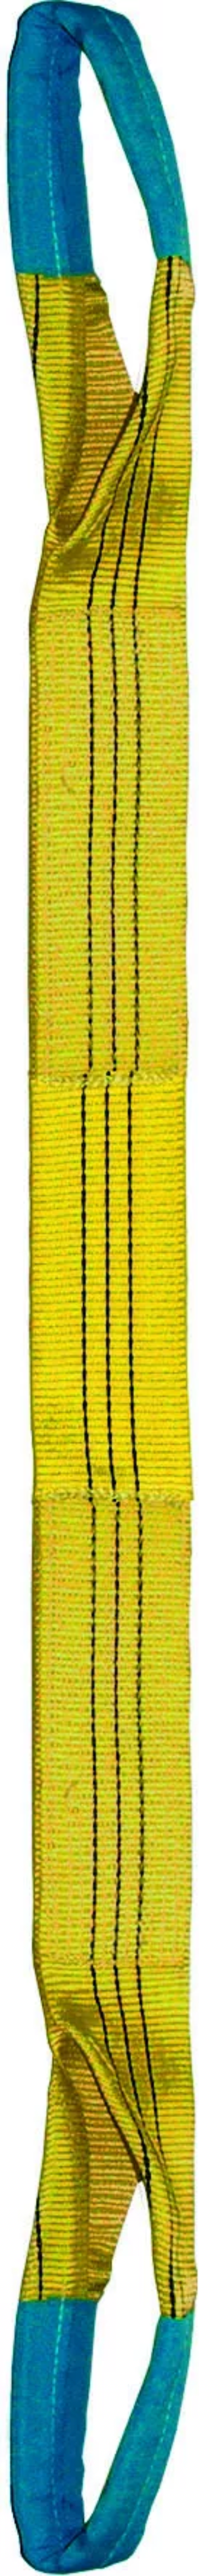 Élingue sangle double 90 mm cmu 3 t jaune boucles repliées lg. 6 m LEVAC - 4822C60